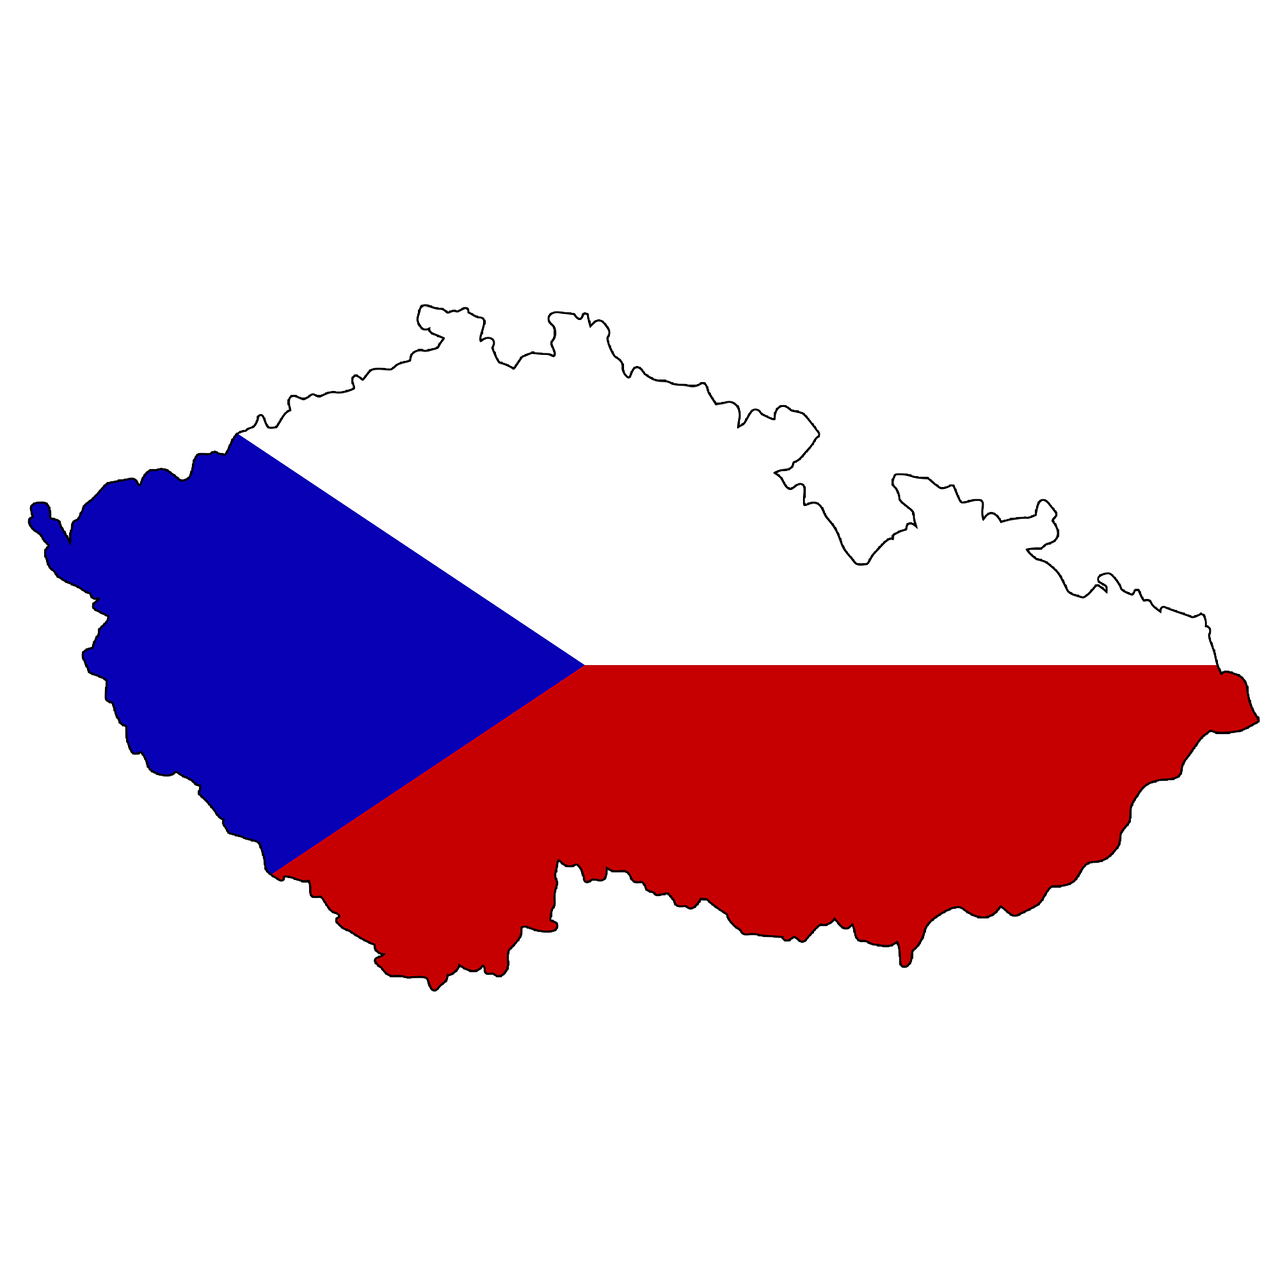 Čekijos Respublika, Čekoslovakija, Žemėlapis, Vėliava, Kontūras, Sienos, Šalis, Europa, Eu, Amerikos Valstijos